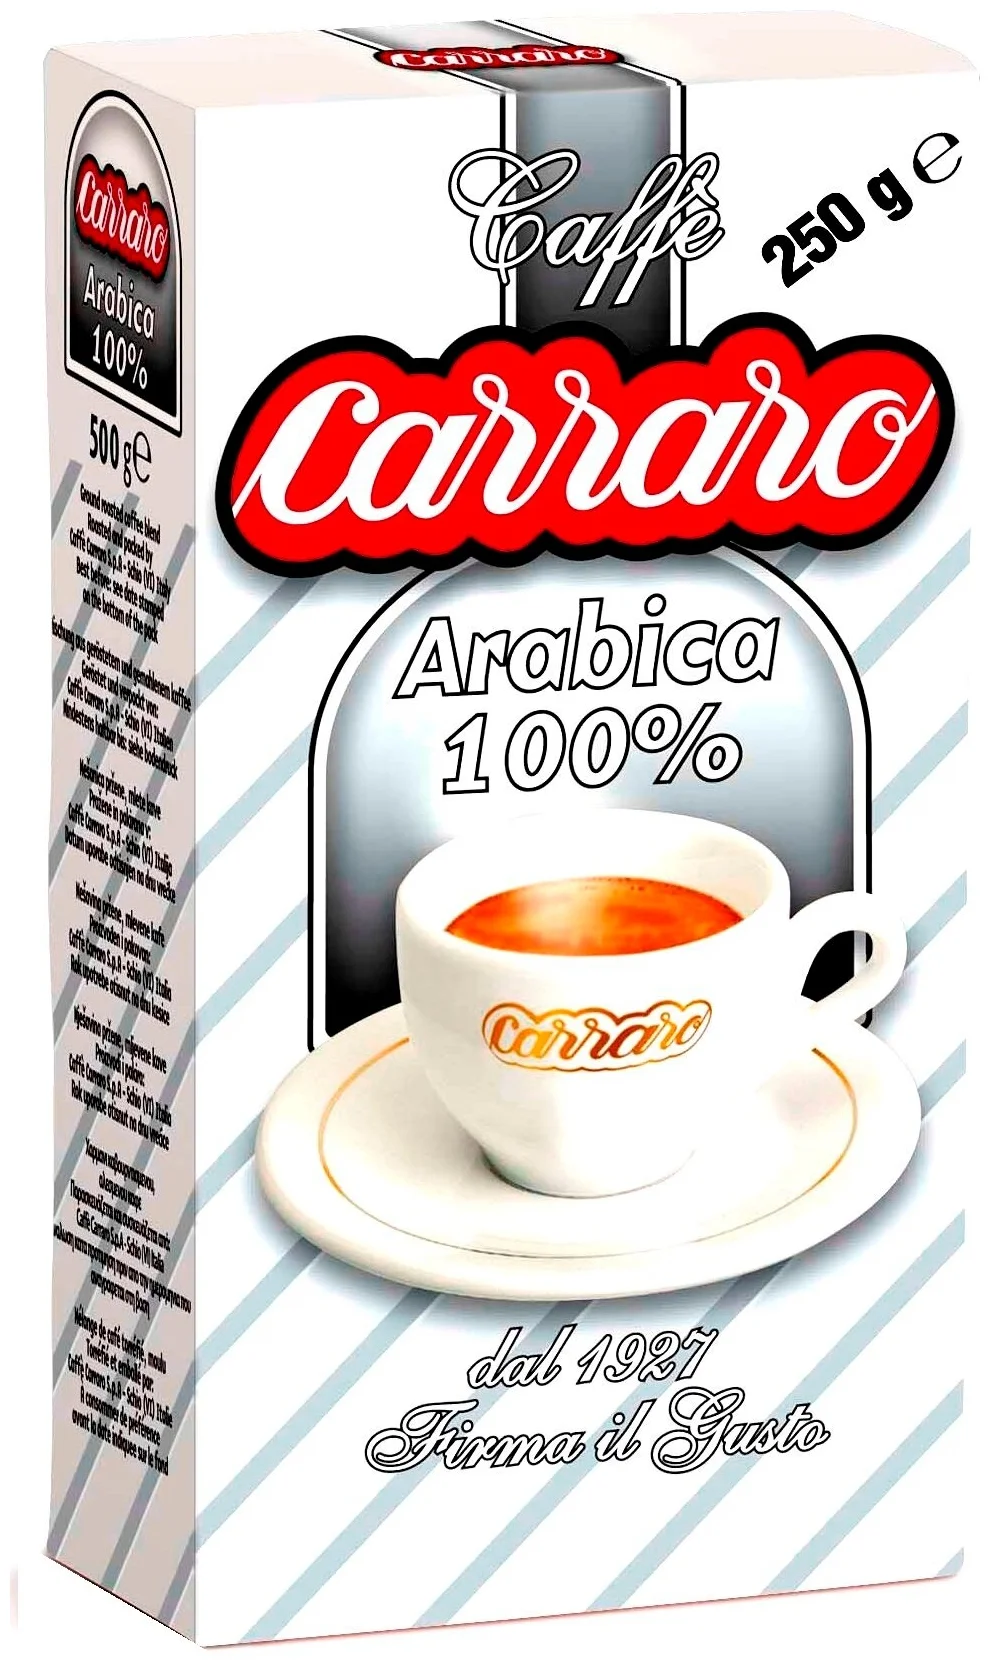 Carraro Arabica - степень обжарки: средняя